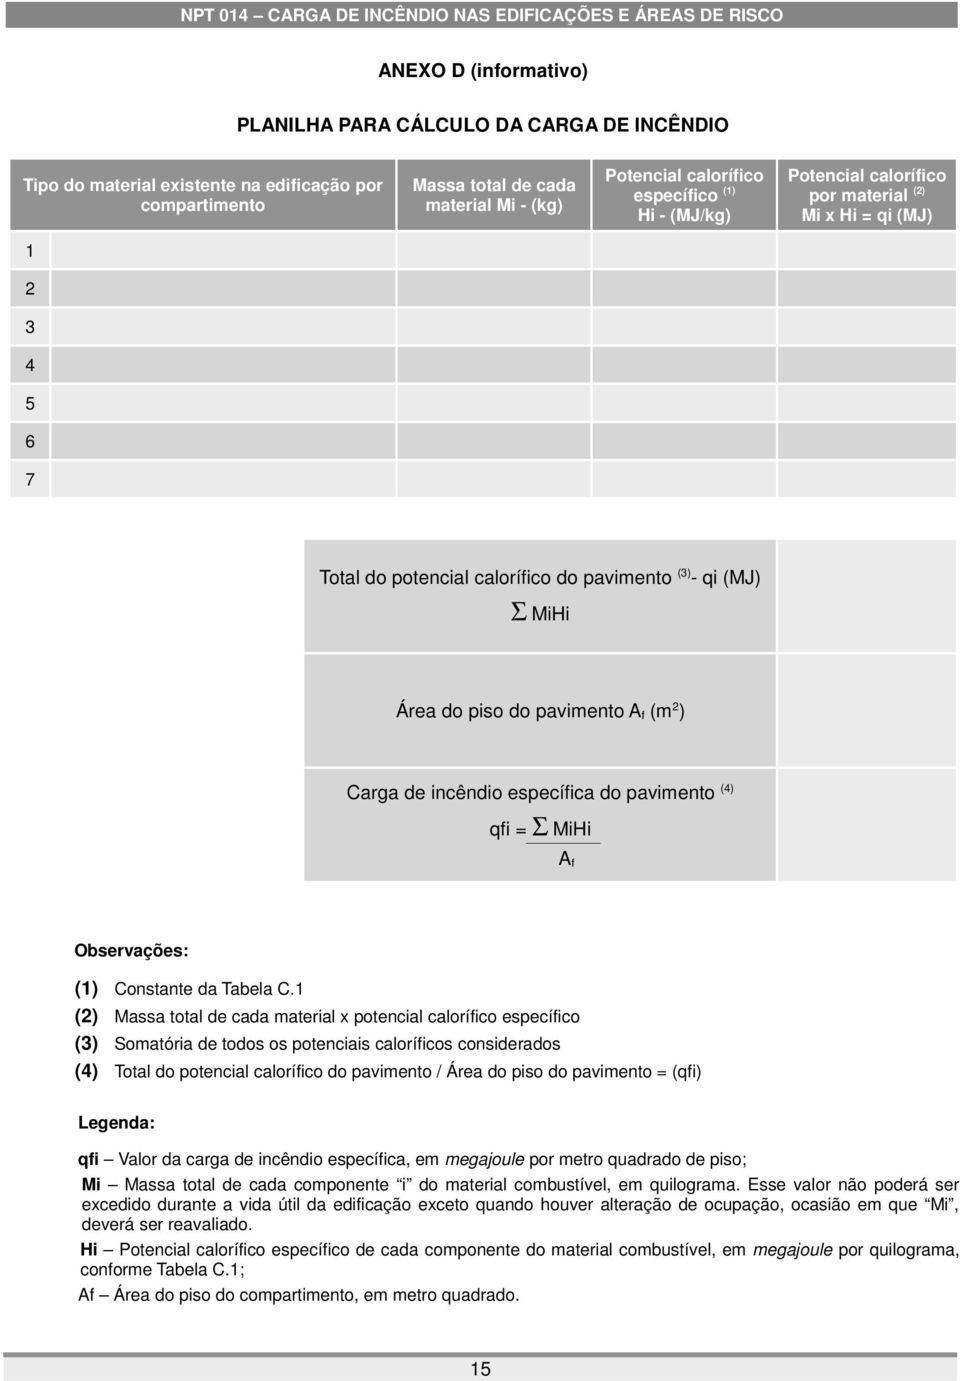 NPT 014 CARGA DE INCÊNDIO NAS EDIFICAÇÕES E ÁREAS DE RISCO - PDF Download  grátis